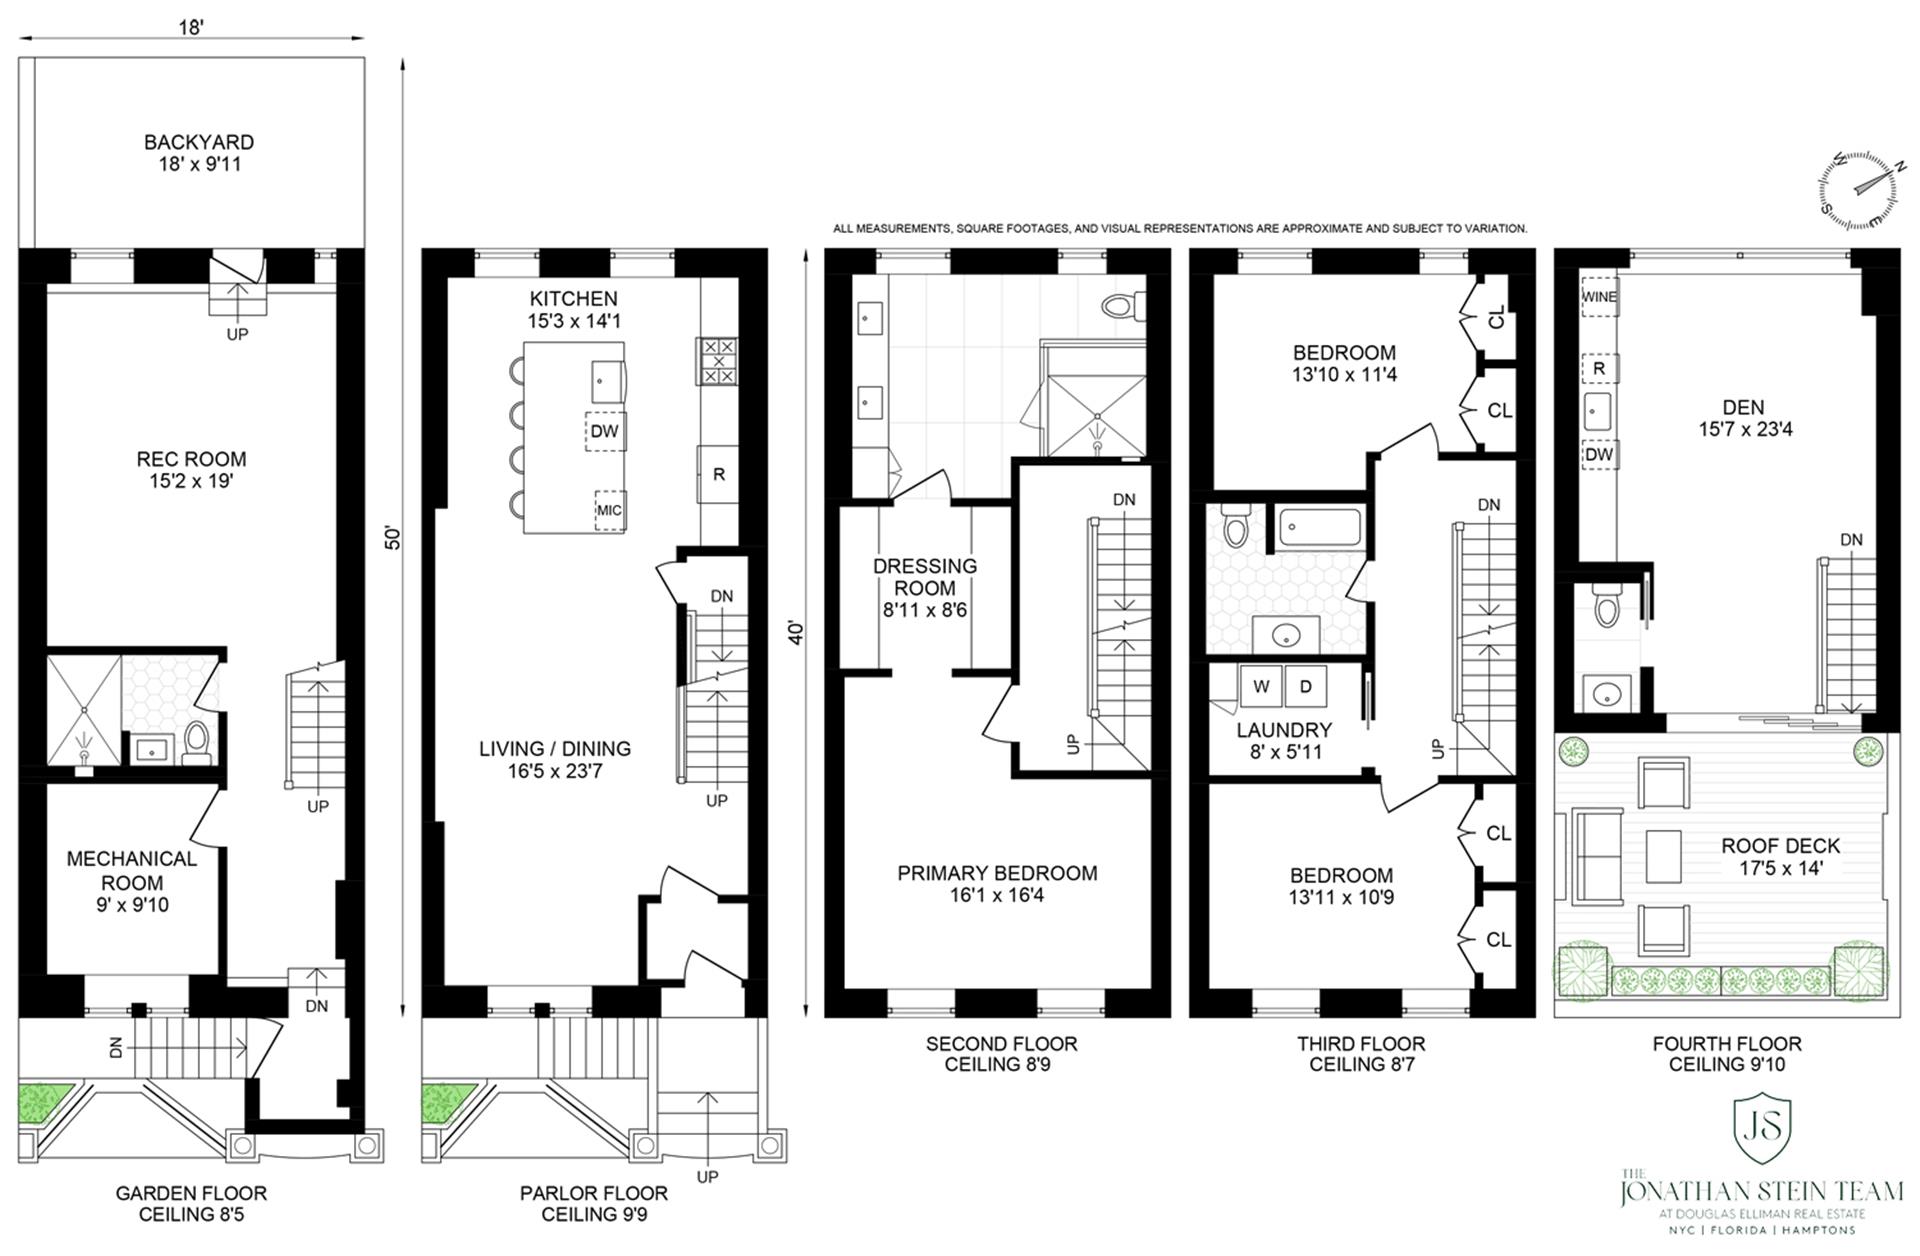 Floorplan for 389 Manhattan Avenue